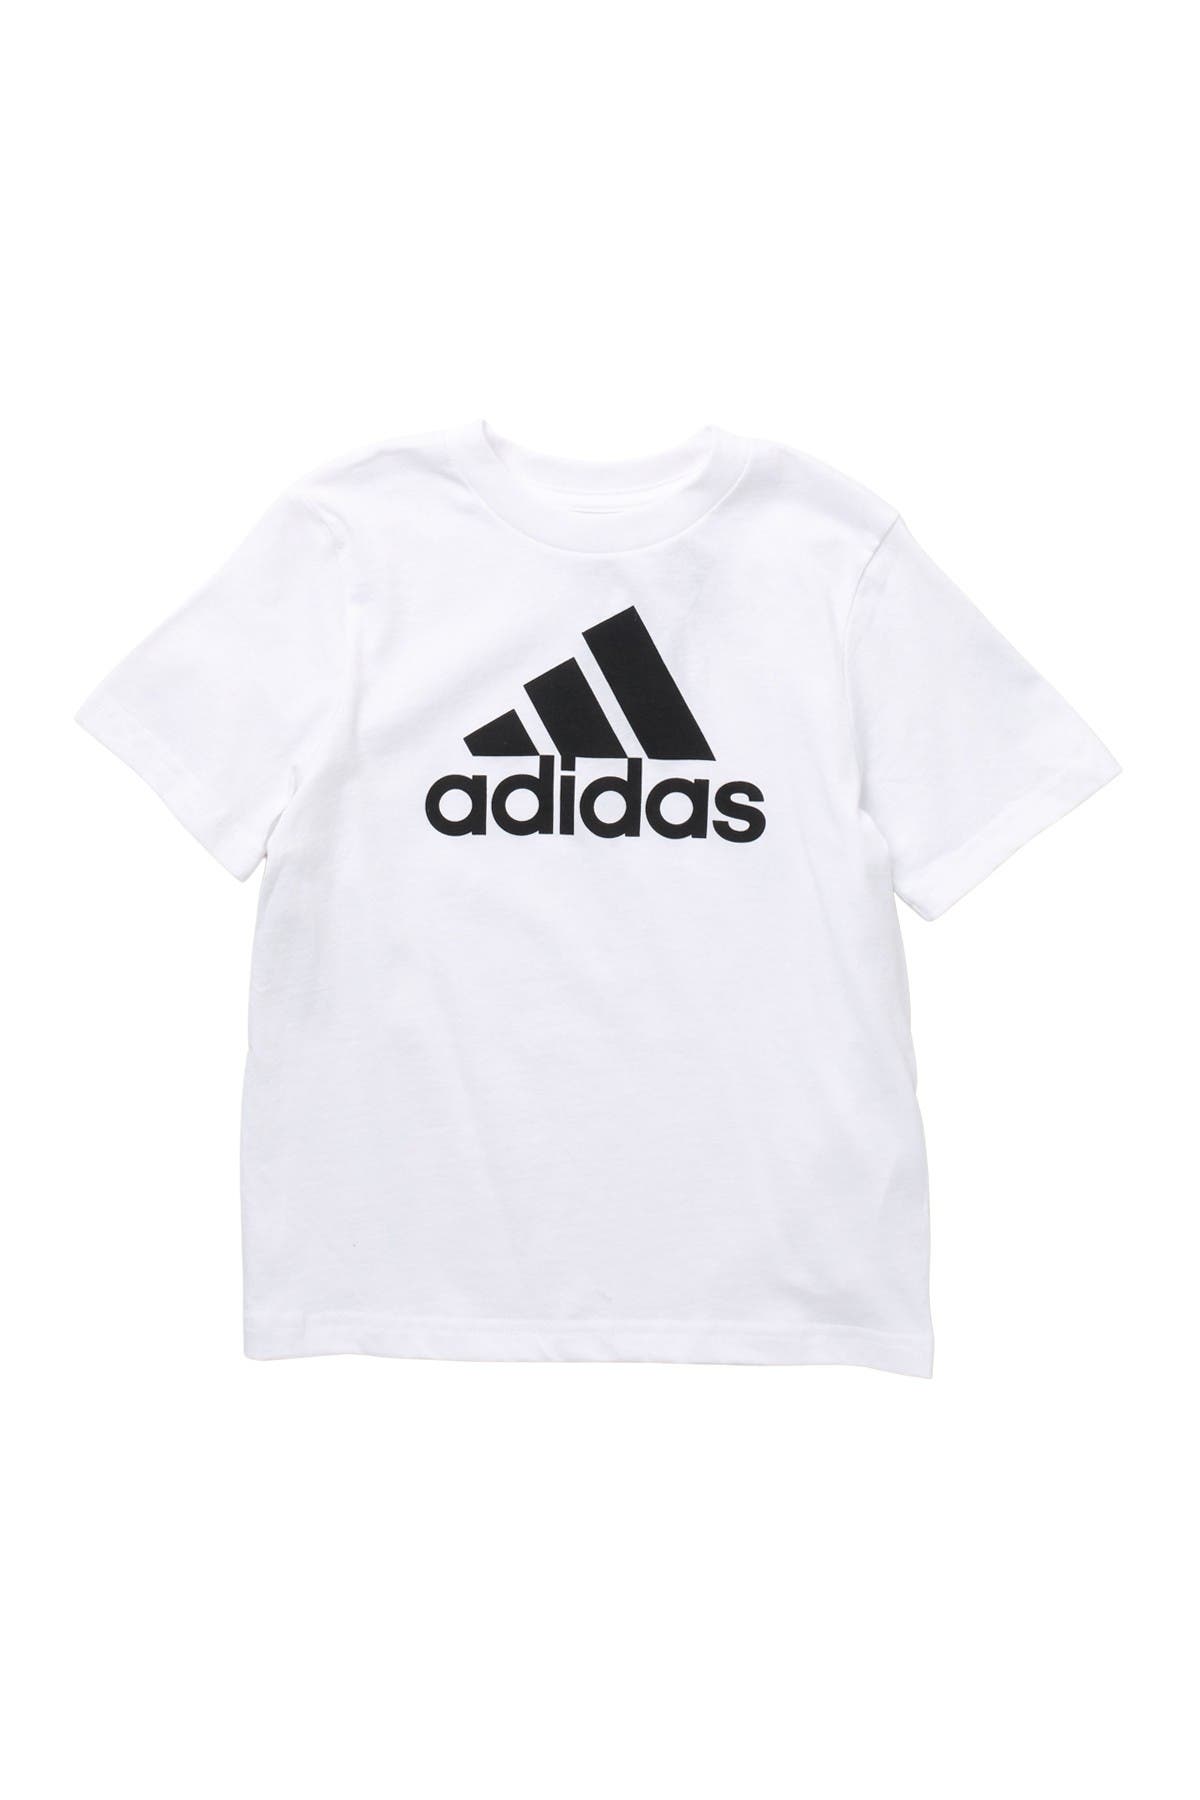 Adidas Originals Kids' Logo Cotton T-shirt In White